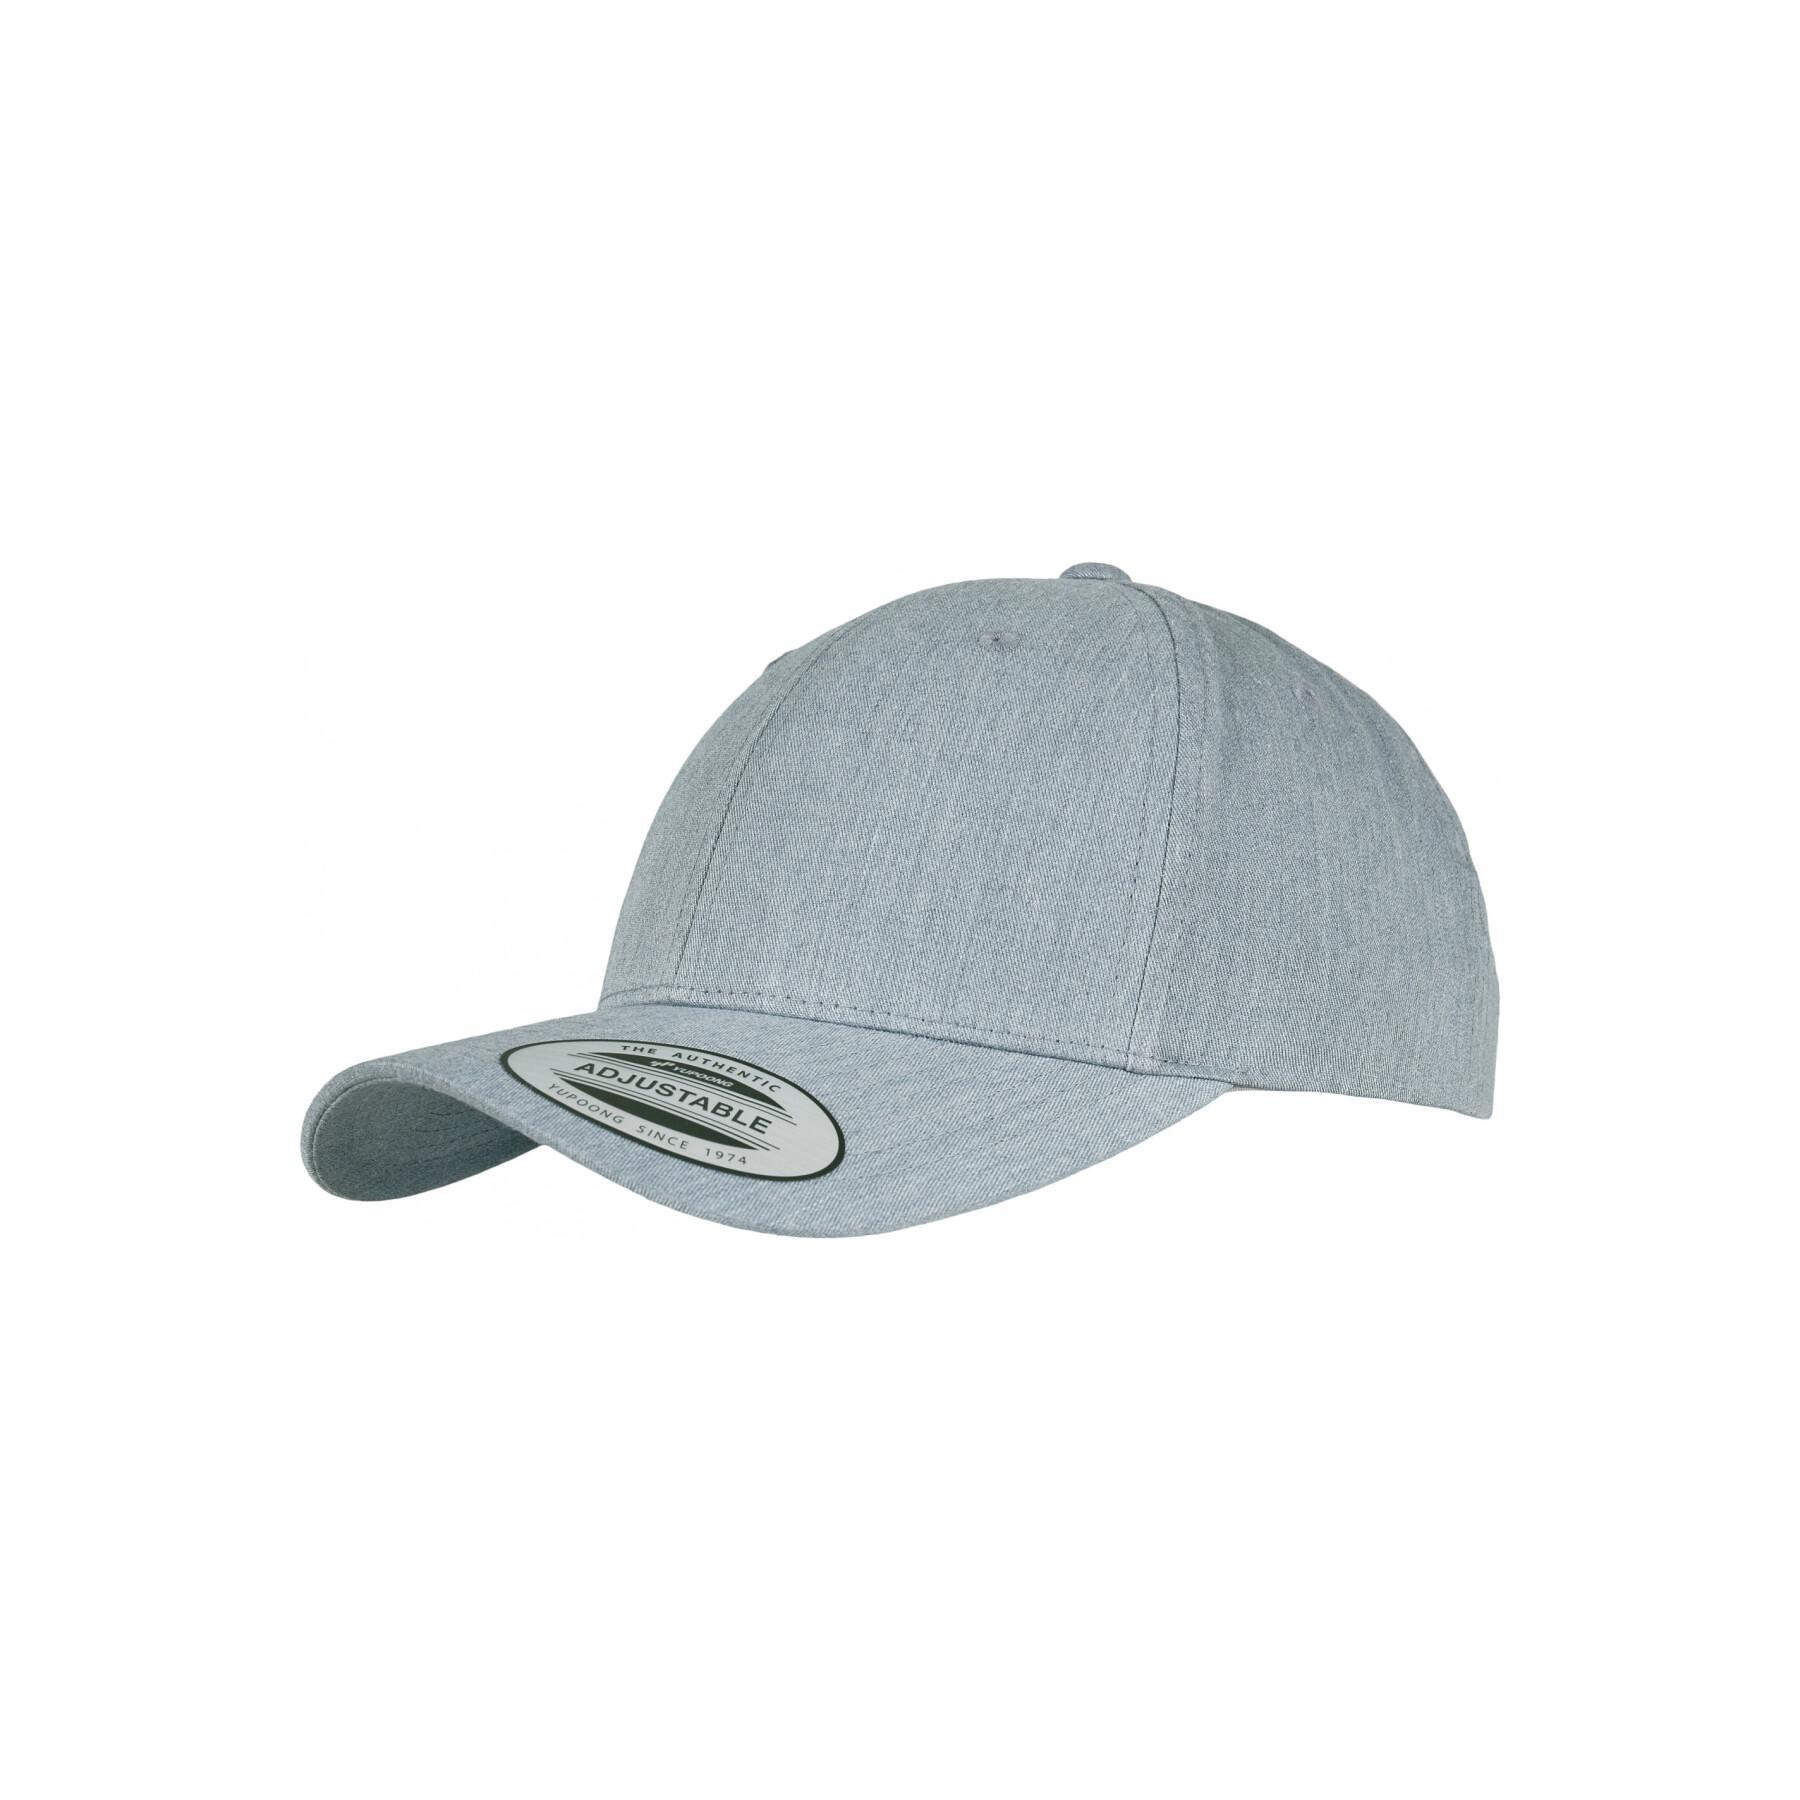 - Flexfit - cap - Headwear Accessories Classic caps Baseball curved